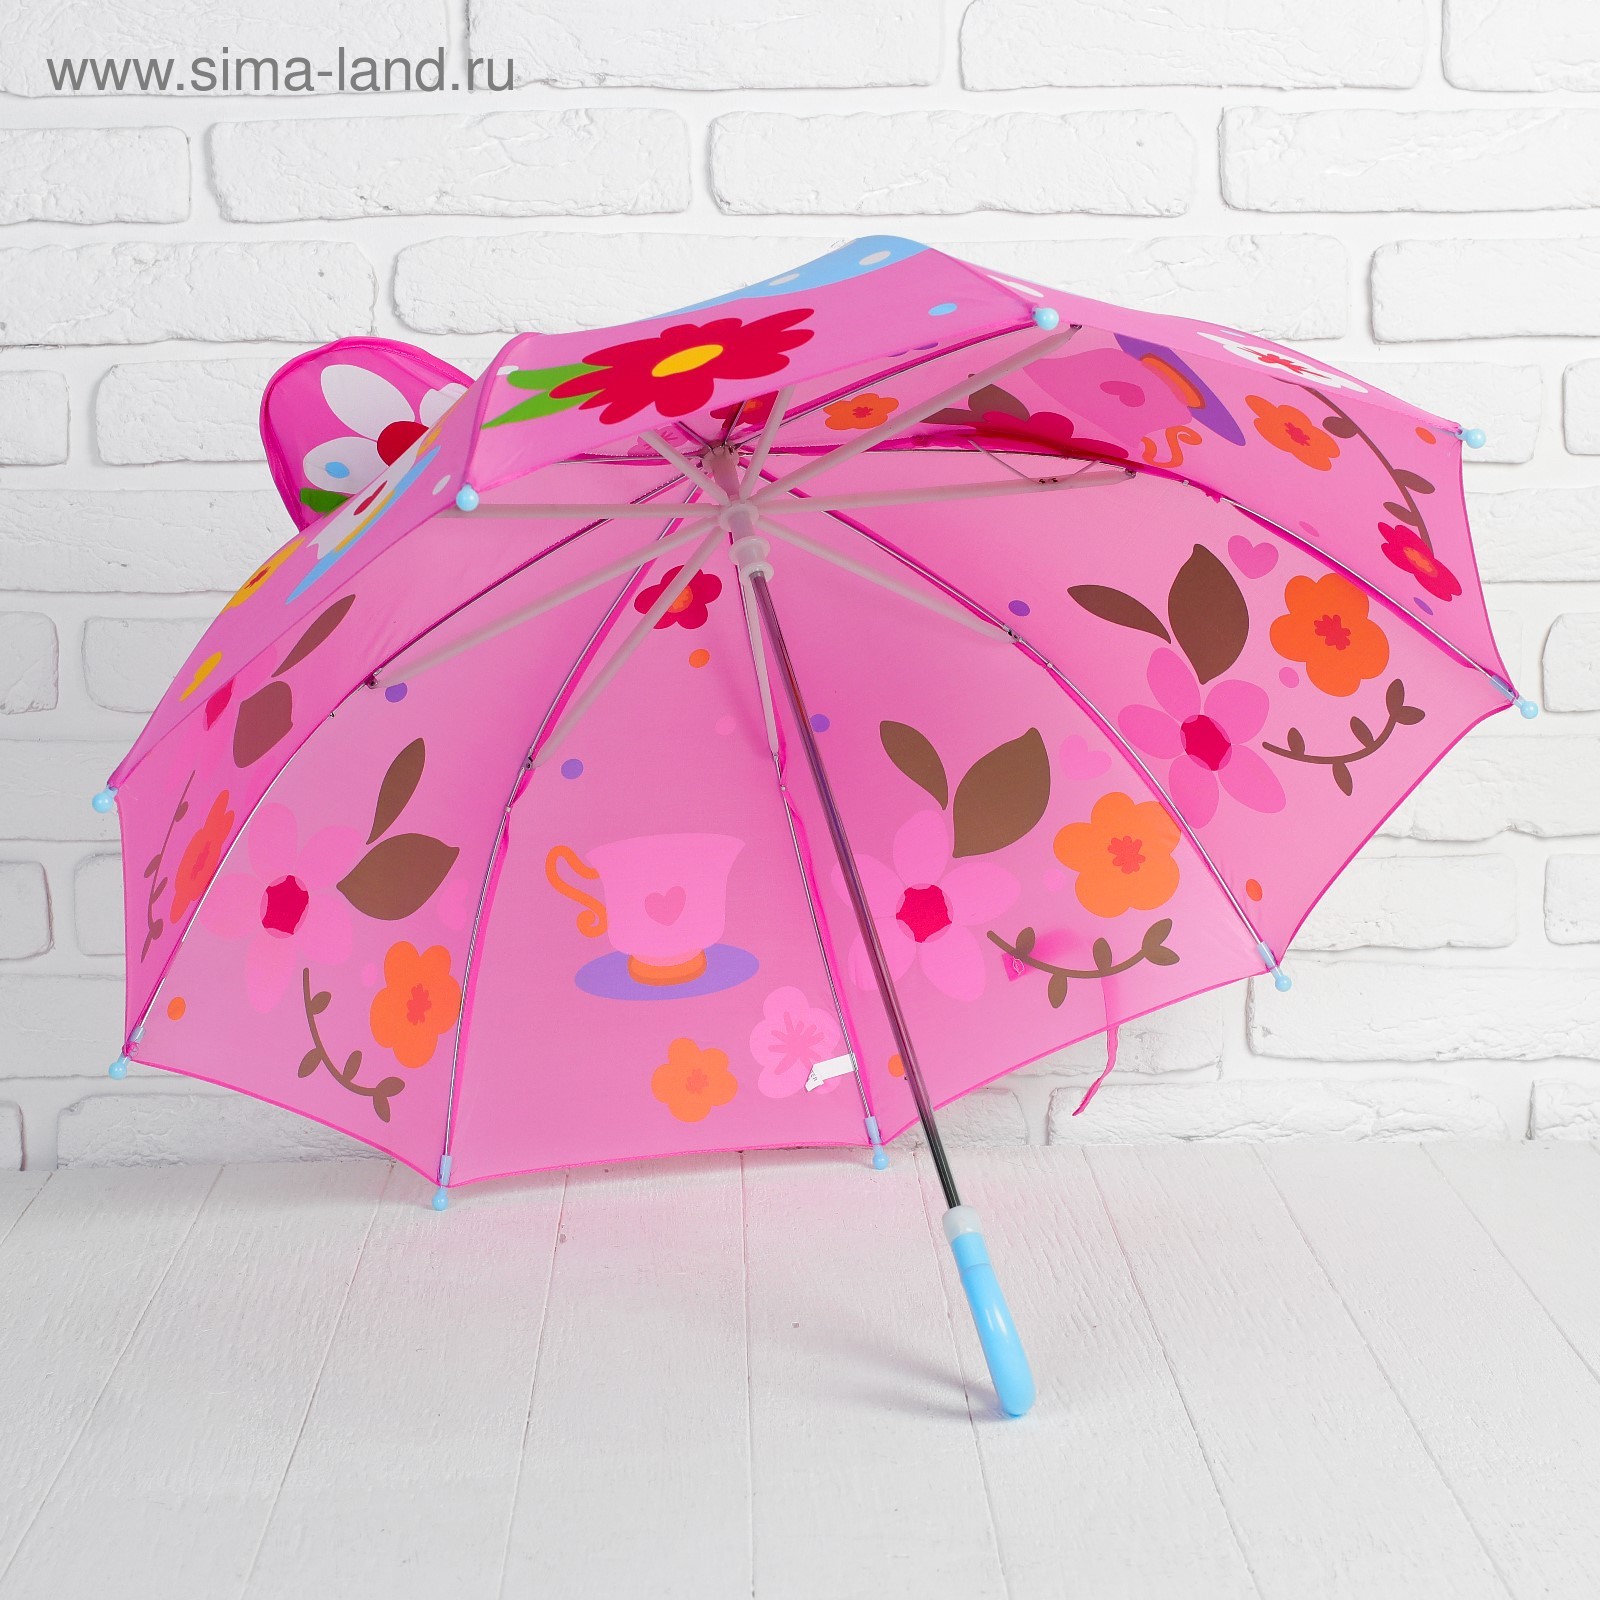 Где купить зонтик. Детские зонты. Зонтик для детей. Детский зонтик для девочки. Детский зонт красивый.